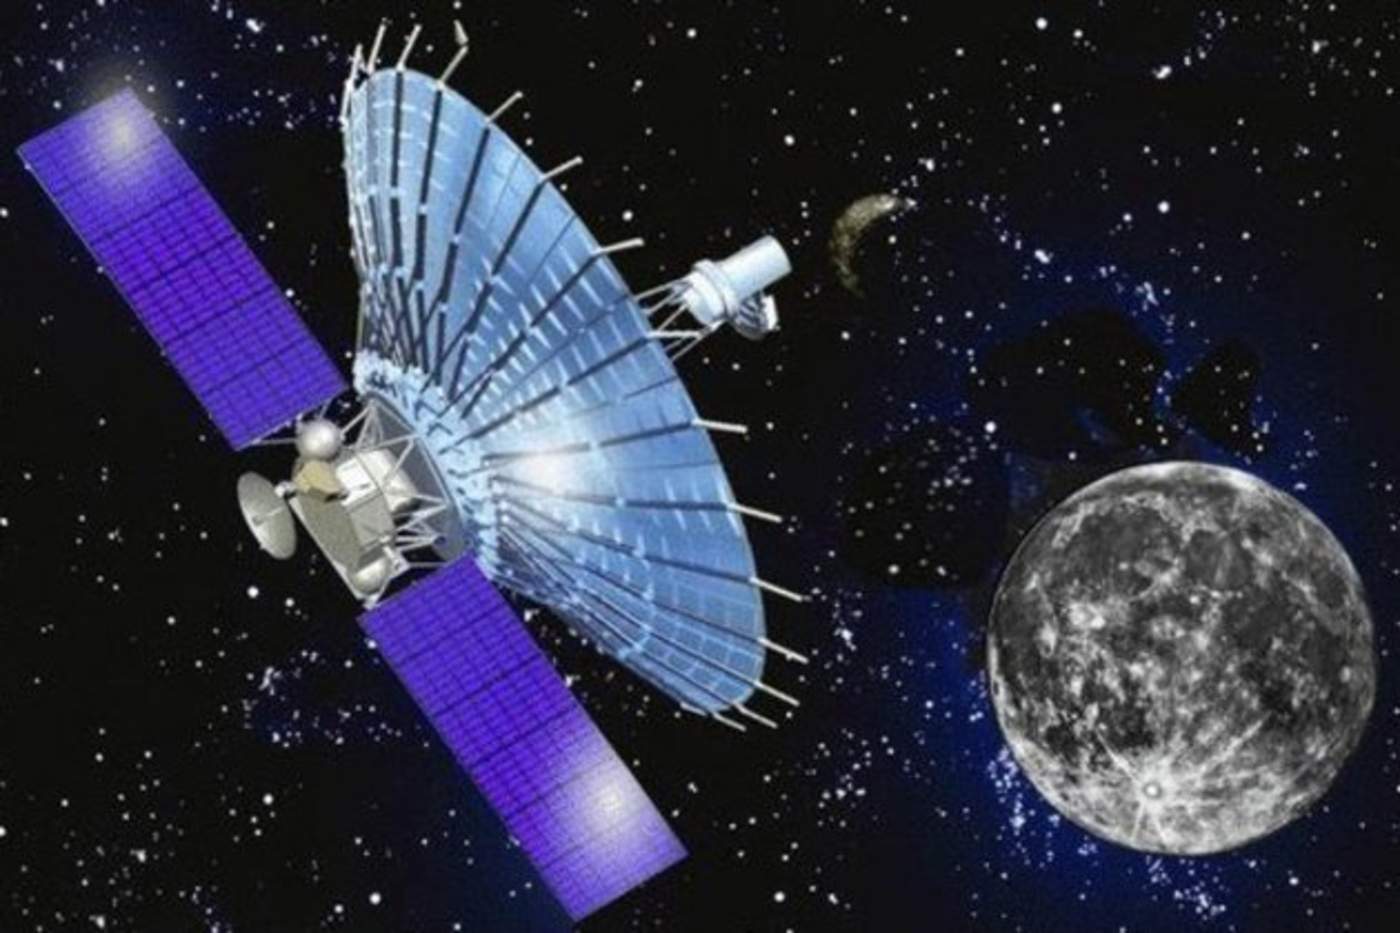 Los especialistas tratarán de nuevo de restablecer la comunicación con el vehículo espacial, que participa en una investigación astrofísica. (ESPECIAL)